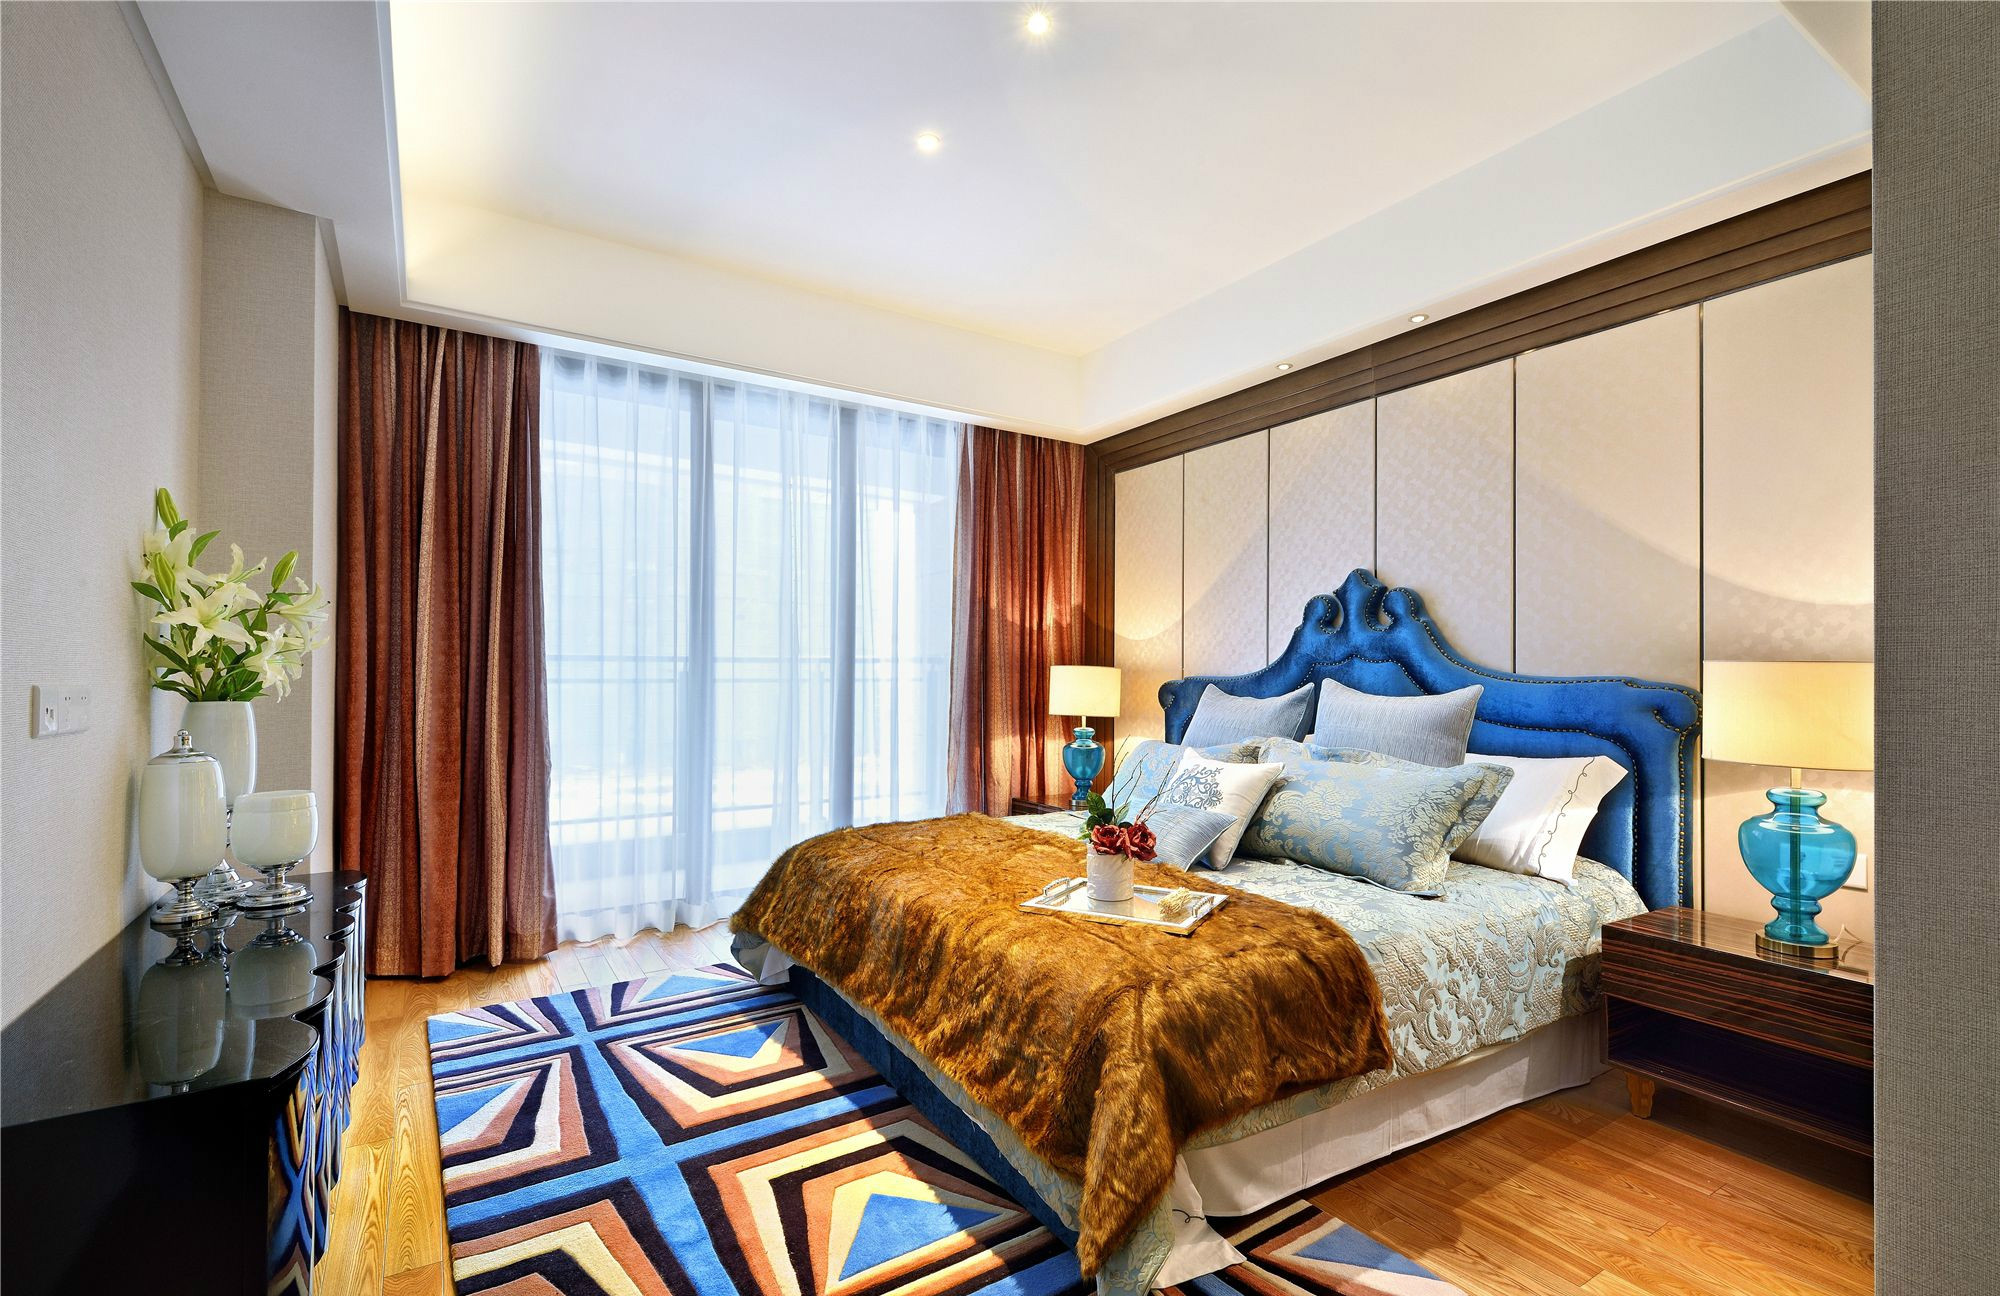 主卧米白色作为床头背景墙，与蓝色床头形成对比，营造出空间层次的丰富性。